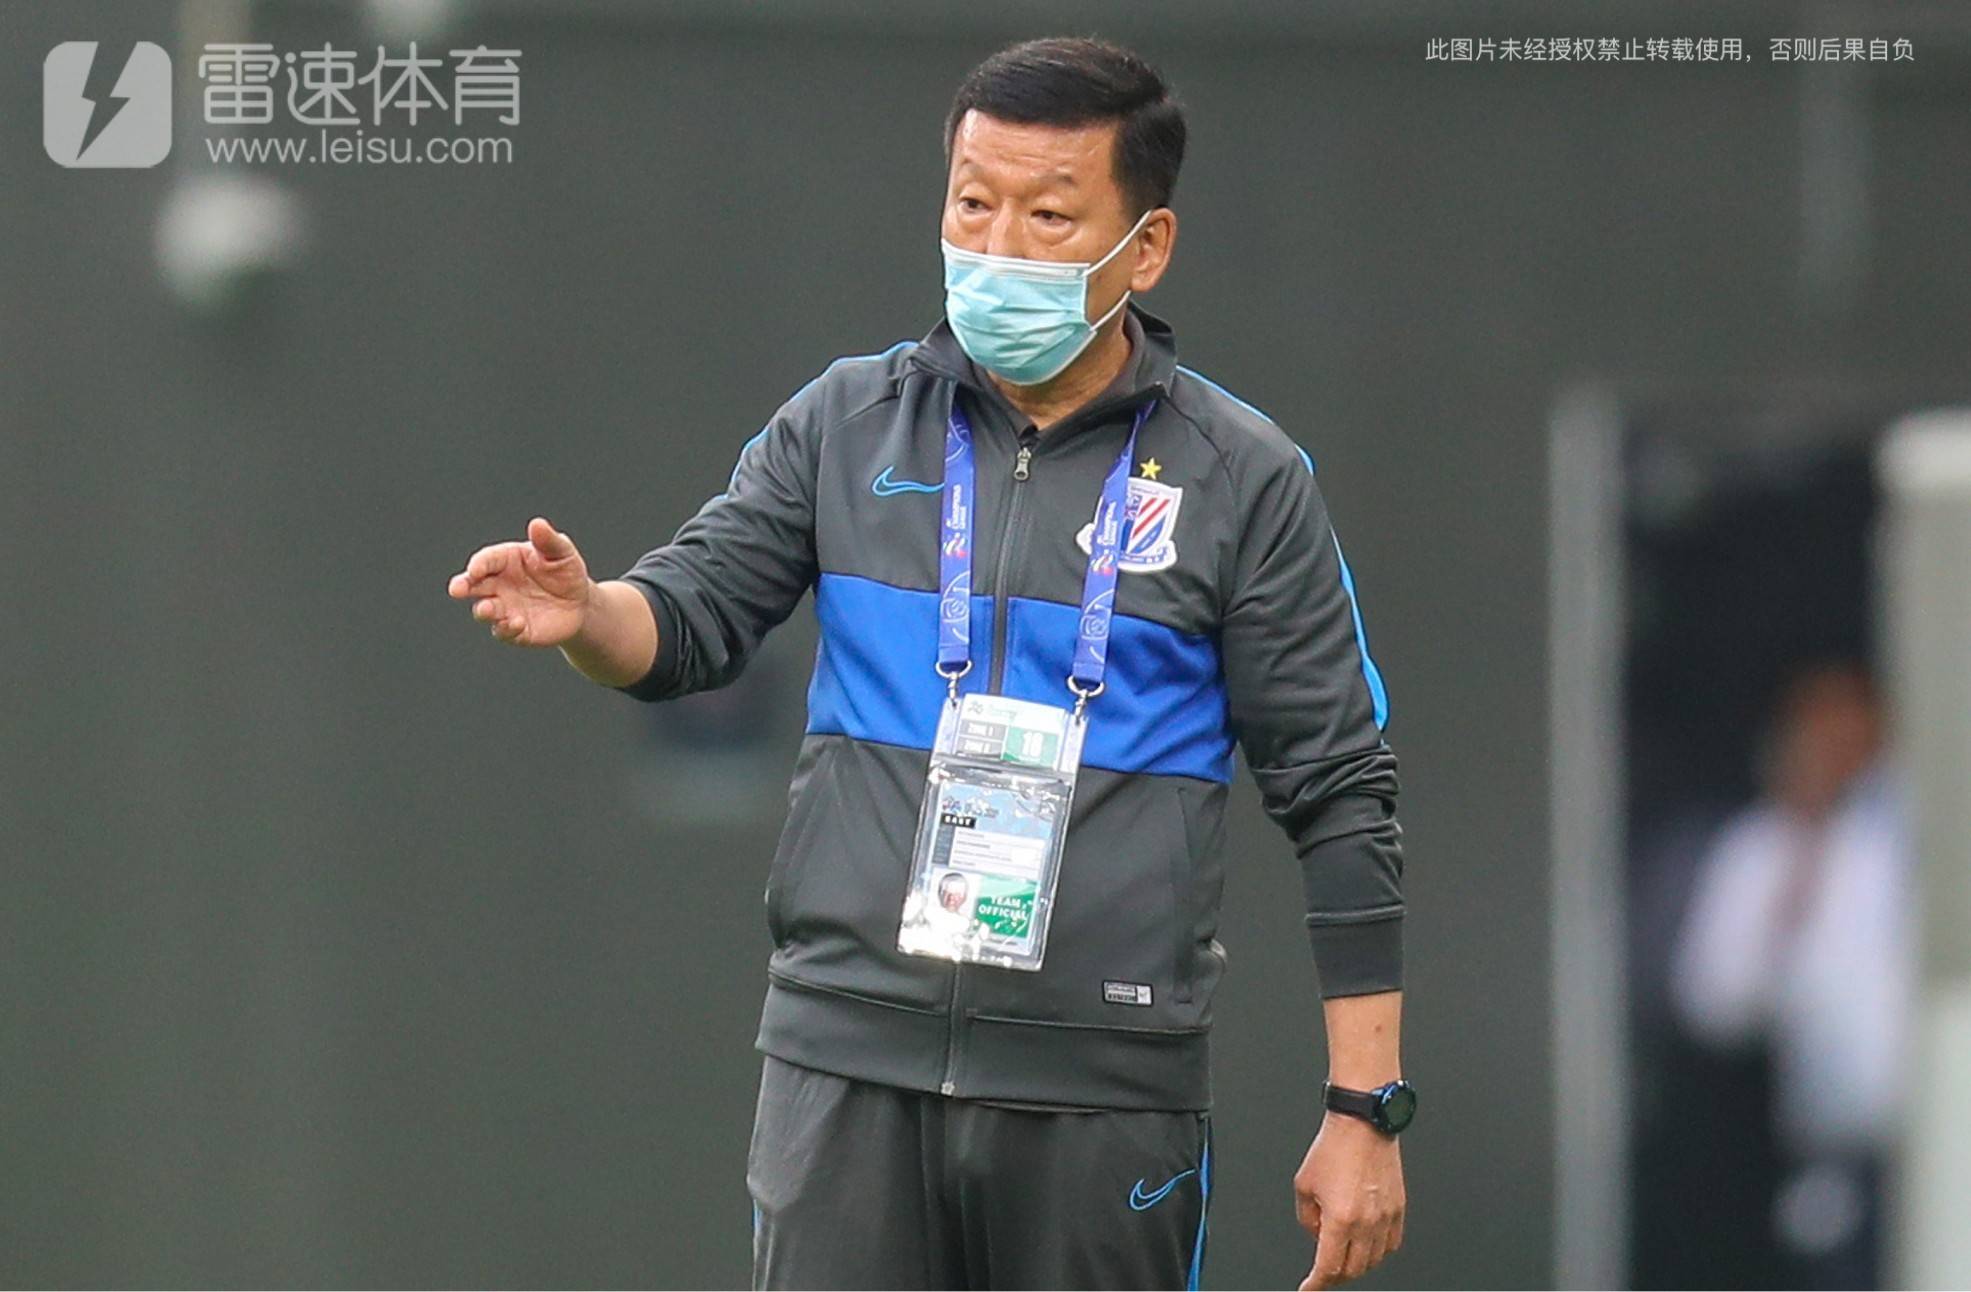 Tin tức bóng đá: Mục tiêu đầu tiên của đội Quảng Châu vẫn đang chạy trong mùa giải này là thành công xuống hạng